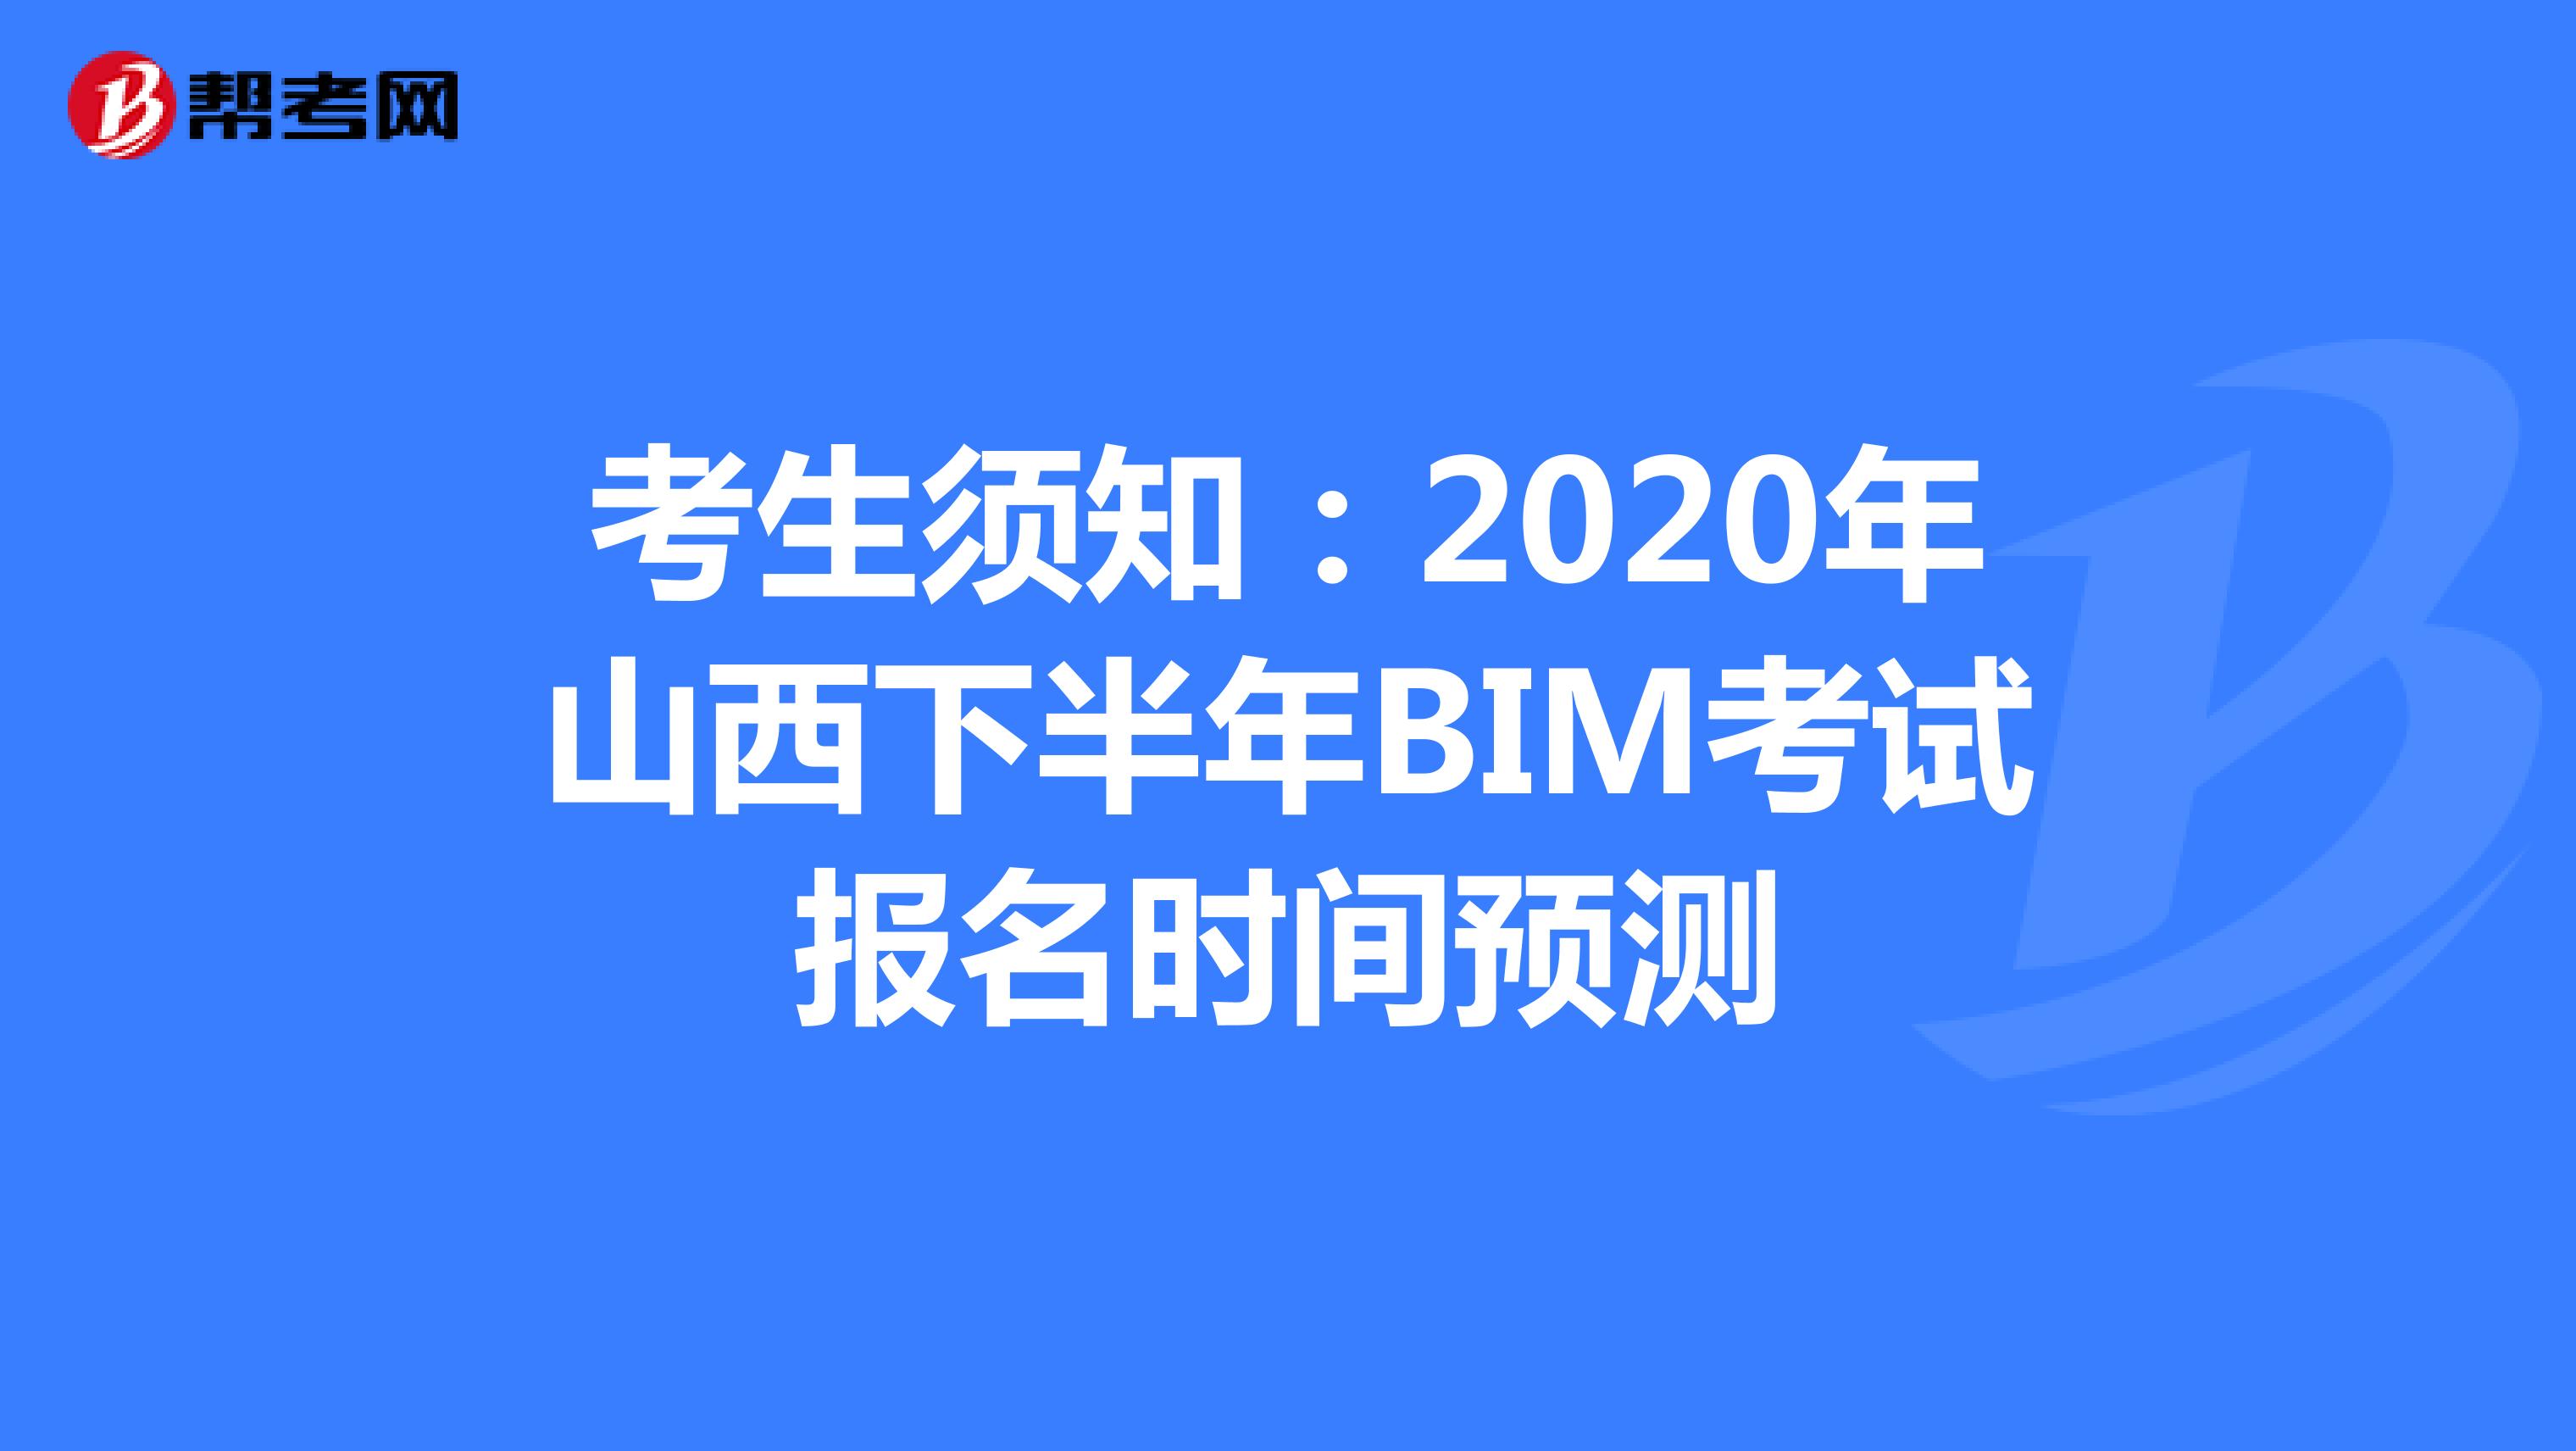 考生须知：2020年山西下半年BIM考试报名时间预测